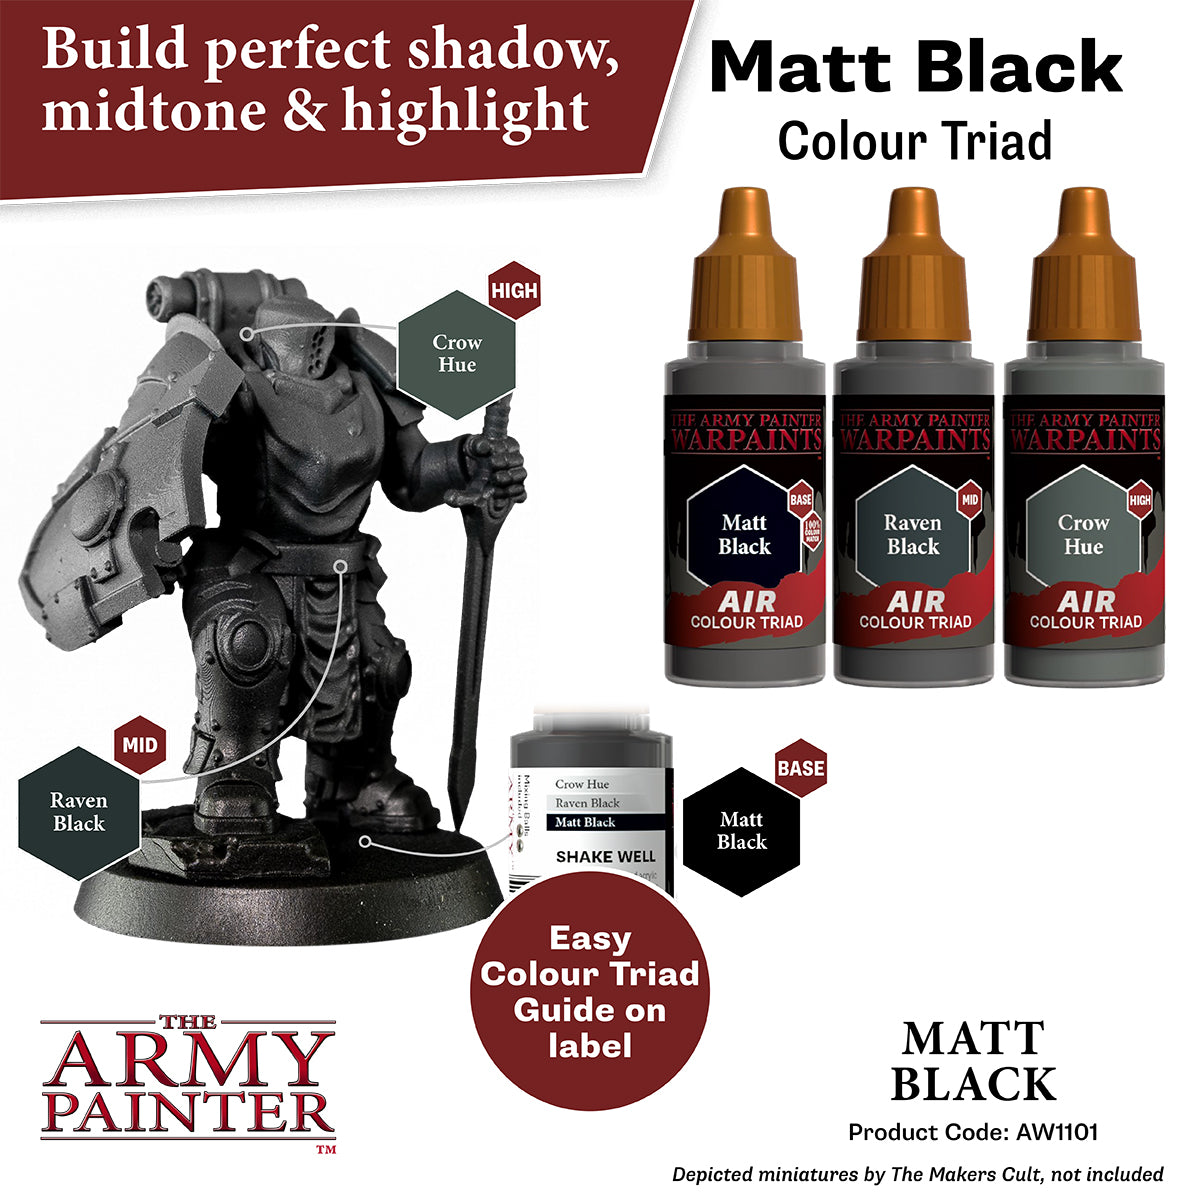 The Army Painter Air Paint Primer: Matt Black - Warpaints Model